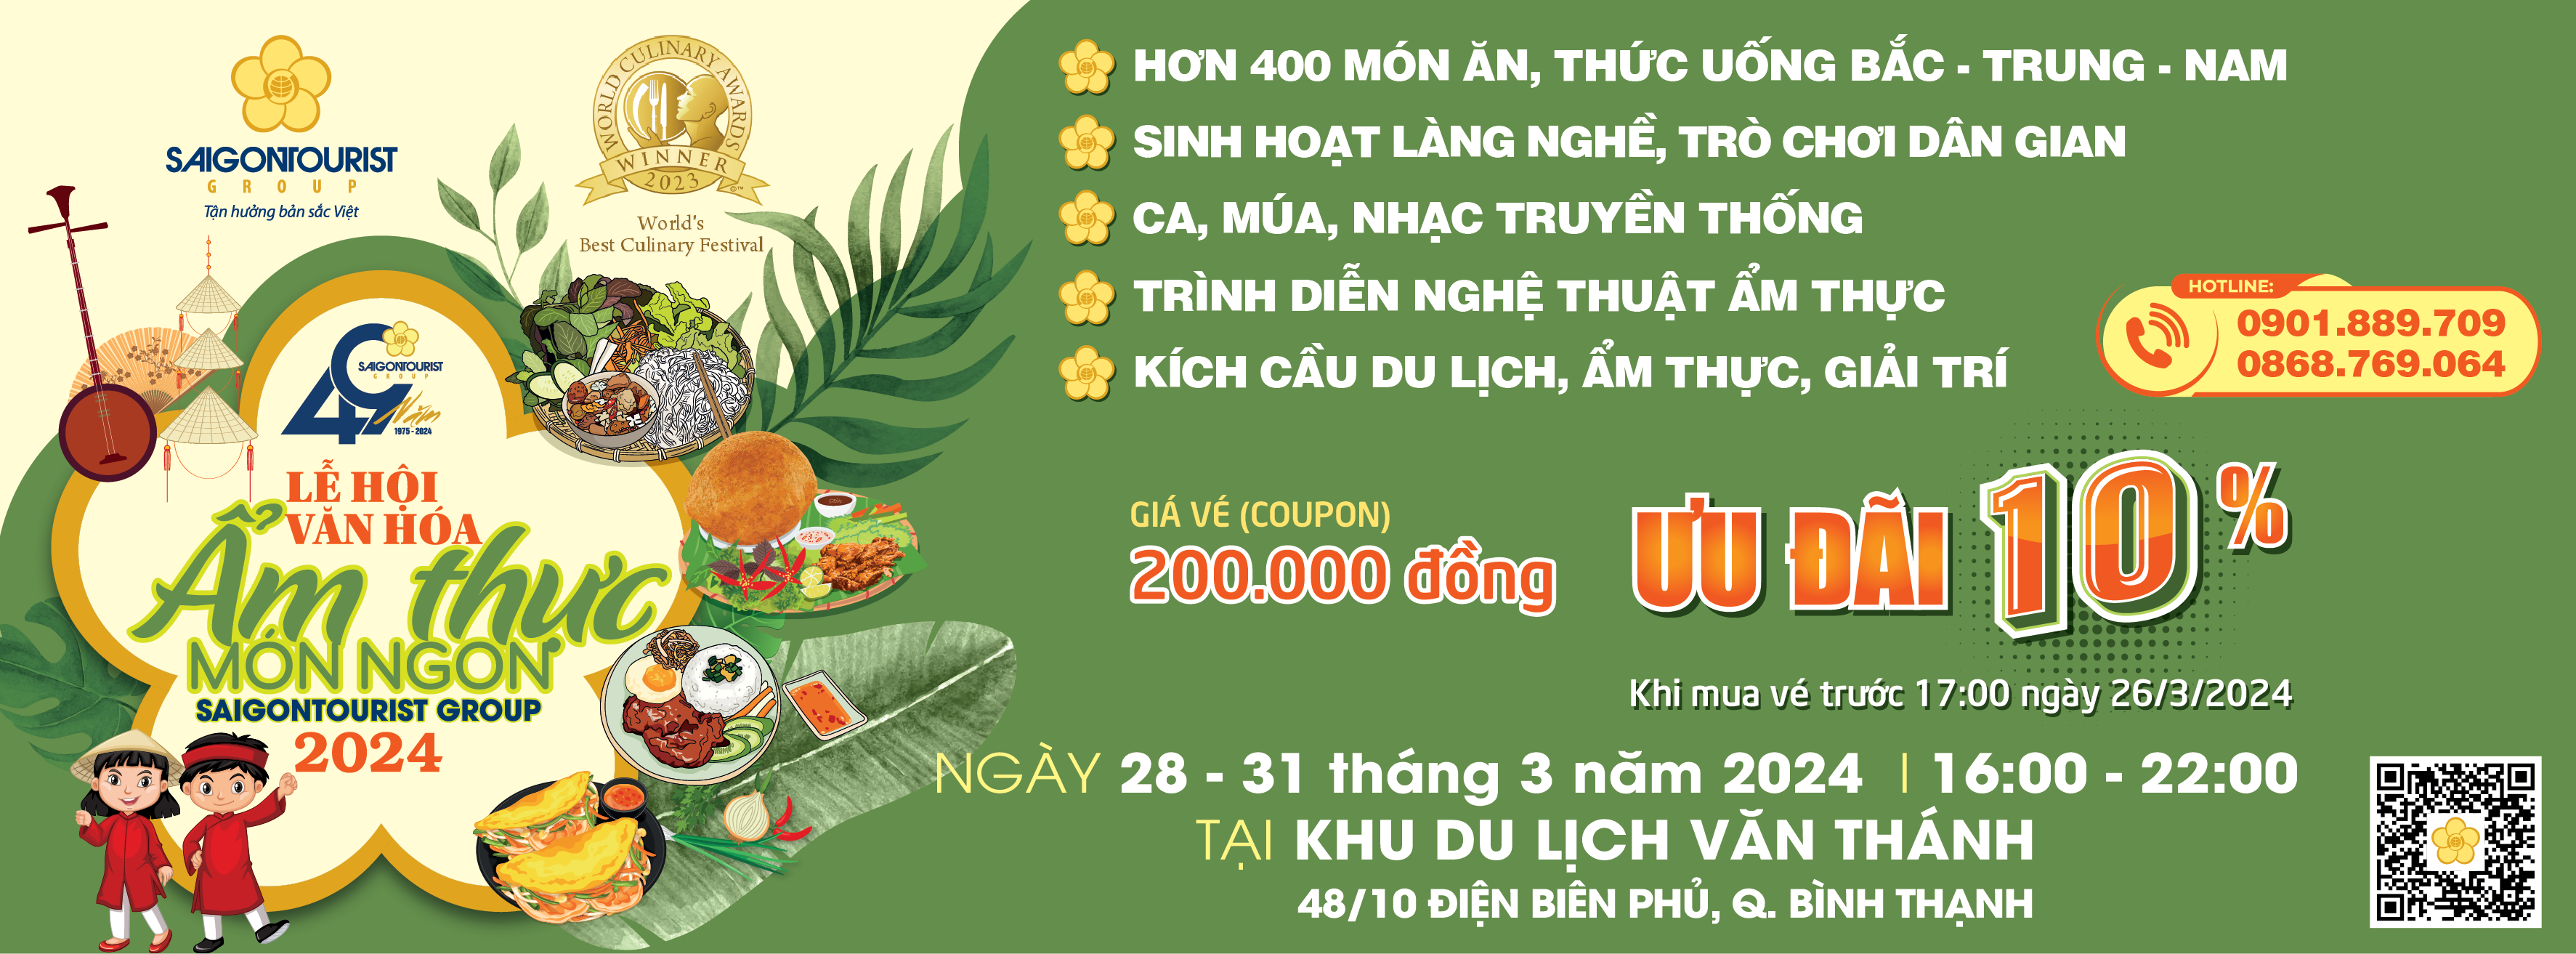 First Hotel - Chào mừng Lễ hội văn hóa Ẩm thực món ngon Saigontourist Group 2024